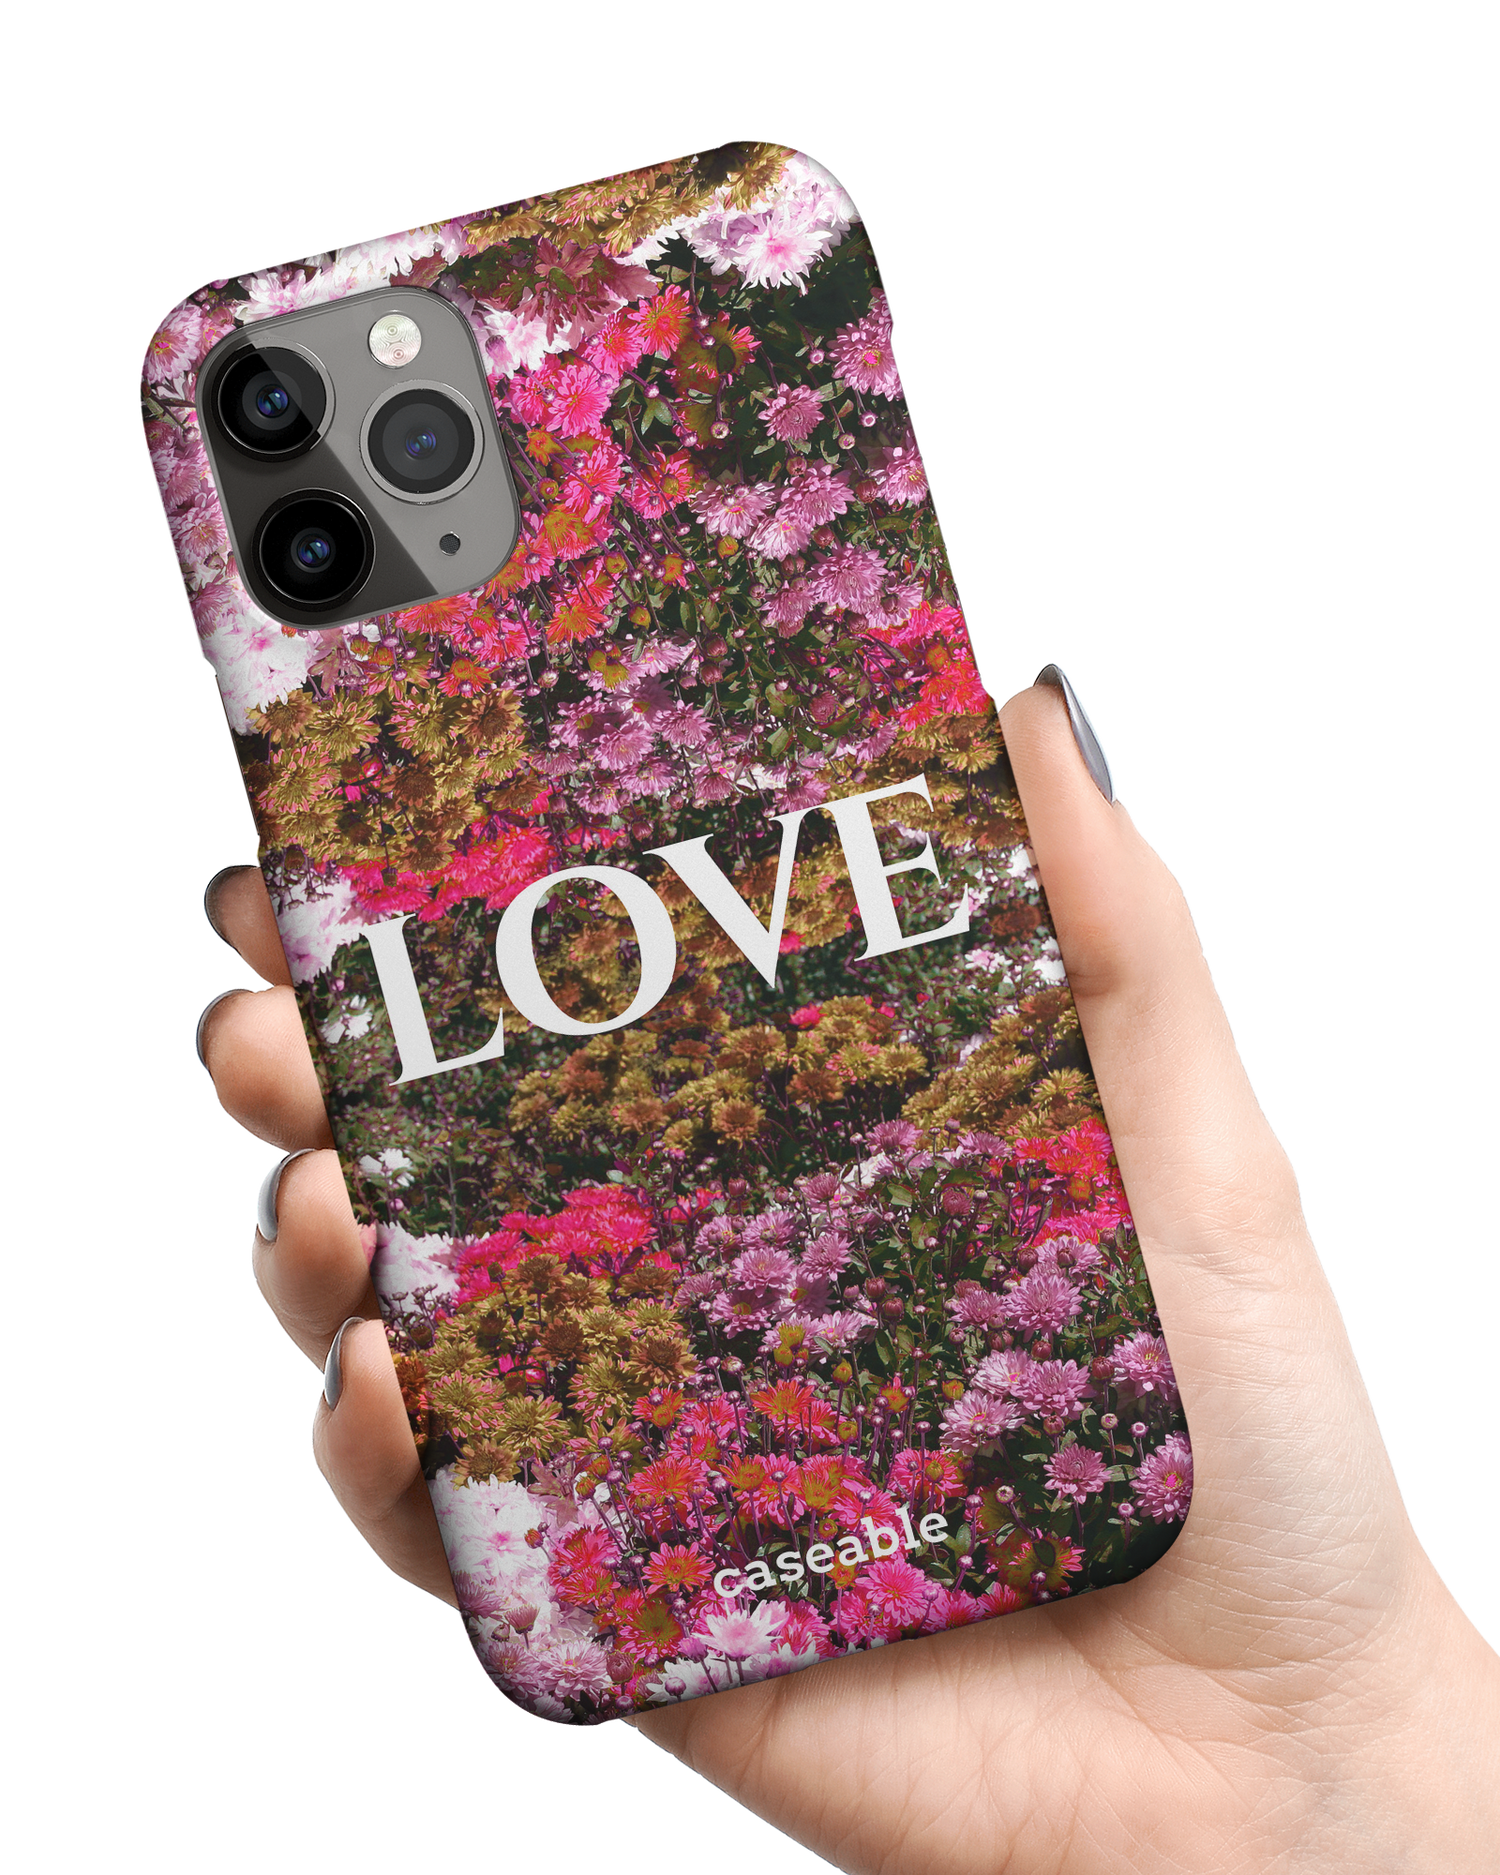 Luxe Love Hardcase Handyhülle Apple iPhone 11 Pro Max in der Hand gehalten